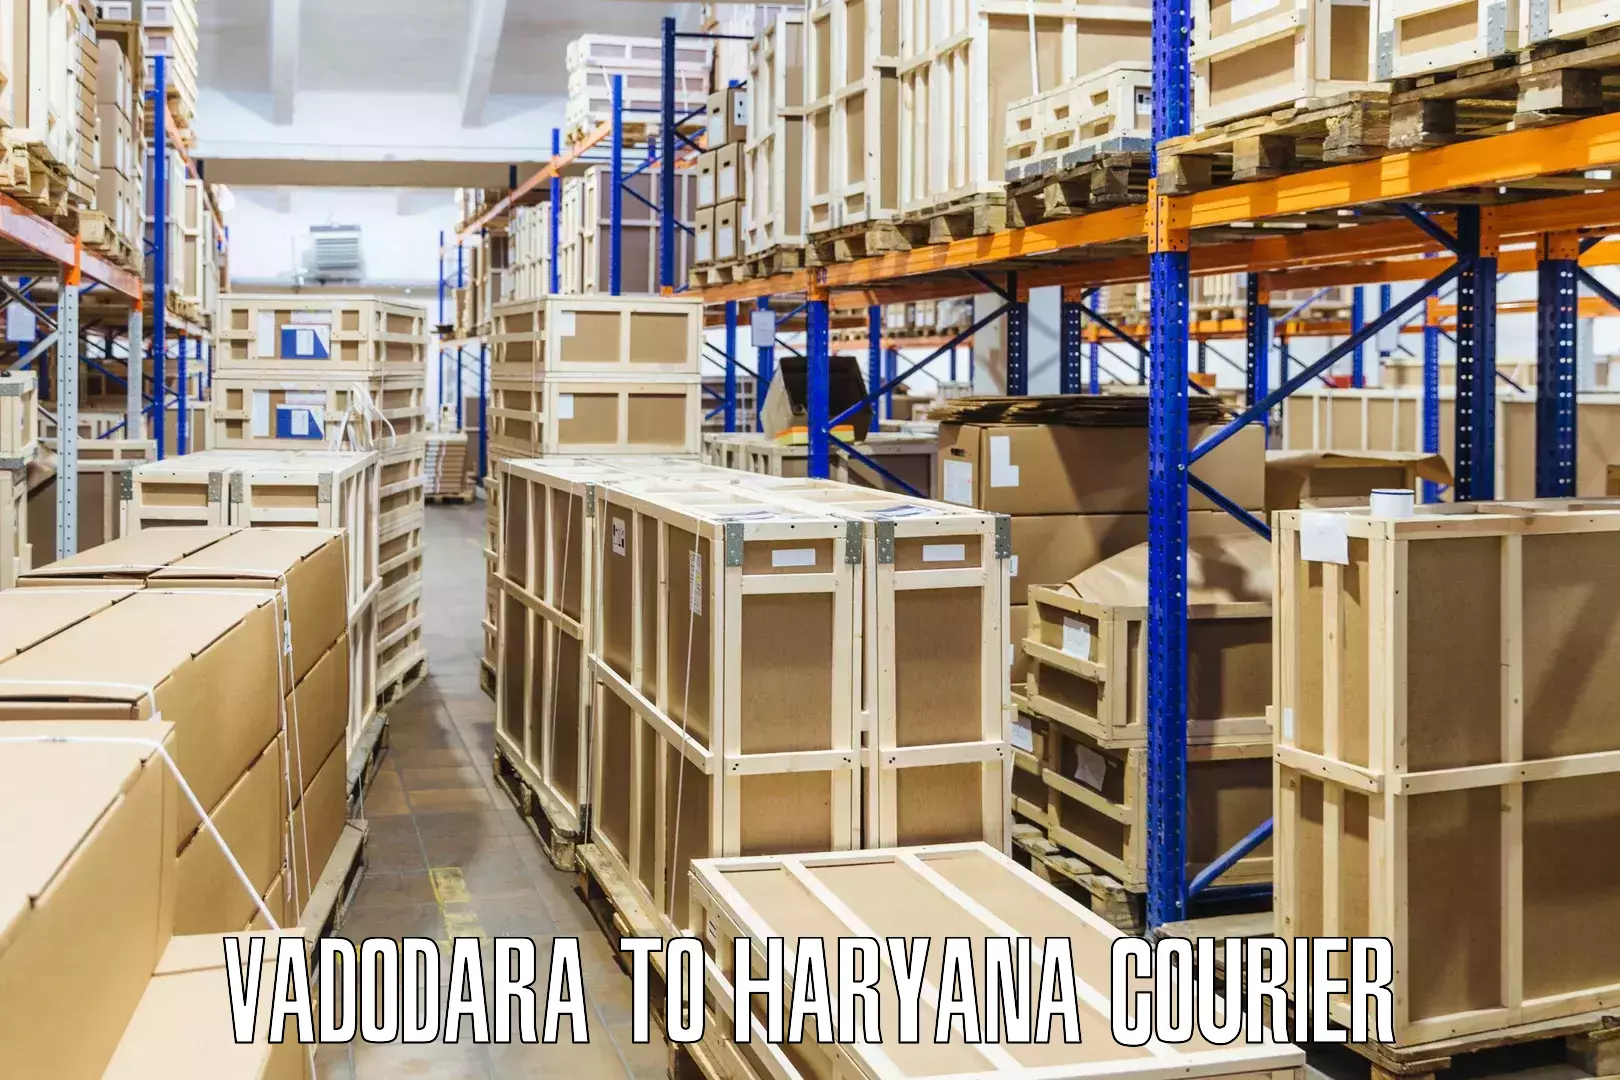 Global shipping solutions Vadodara to Narwana